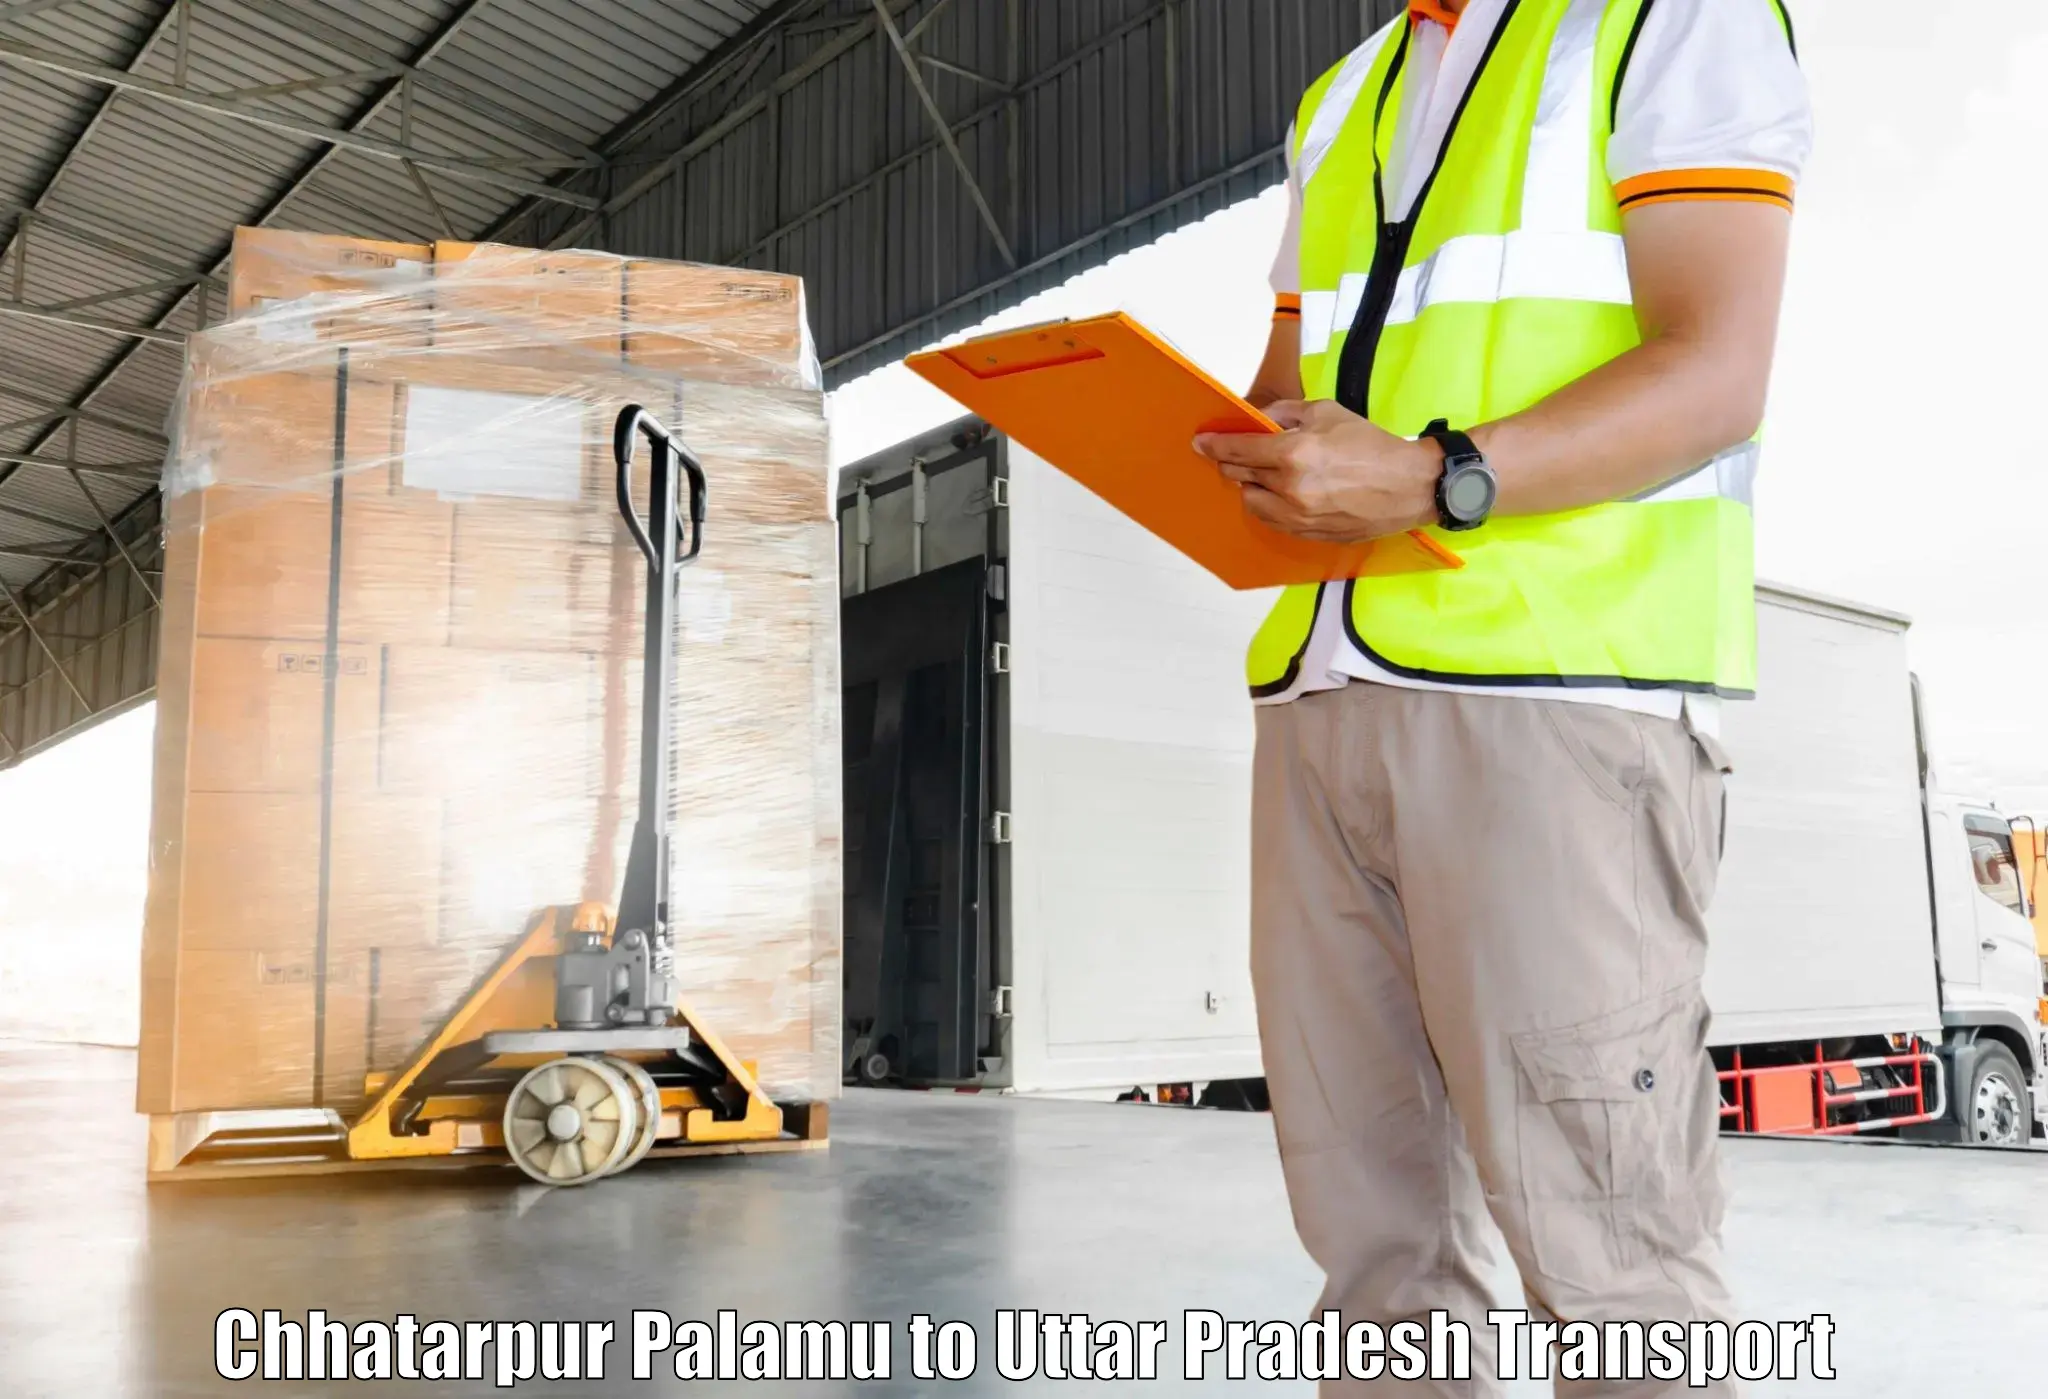 Furniture transport service Chhatarpur Palamu to Mungra Badshahpur